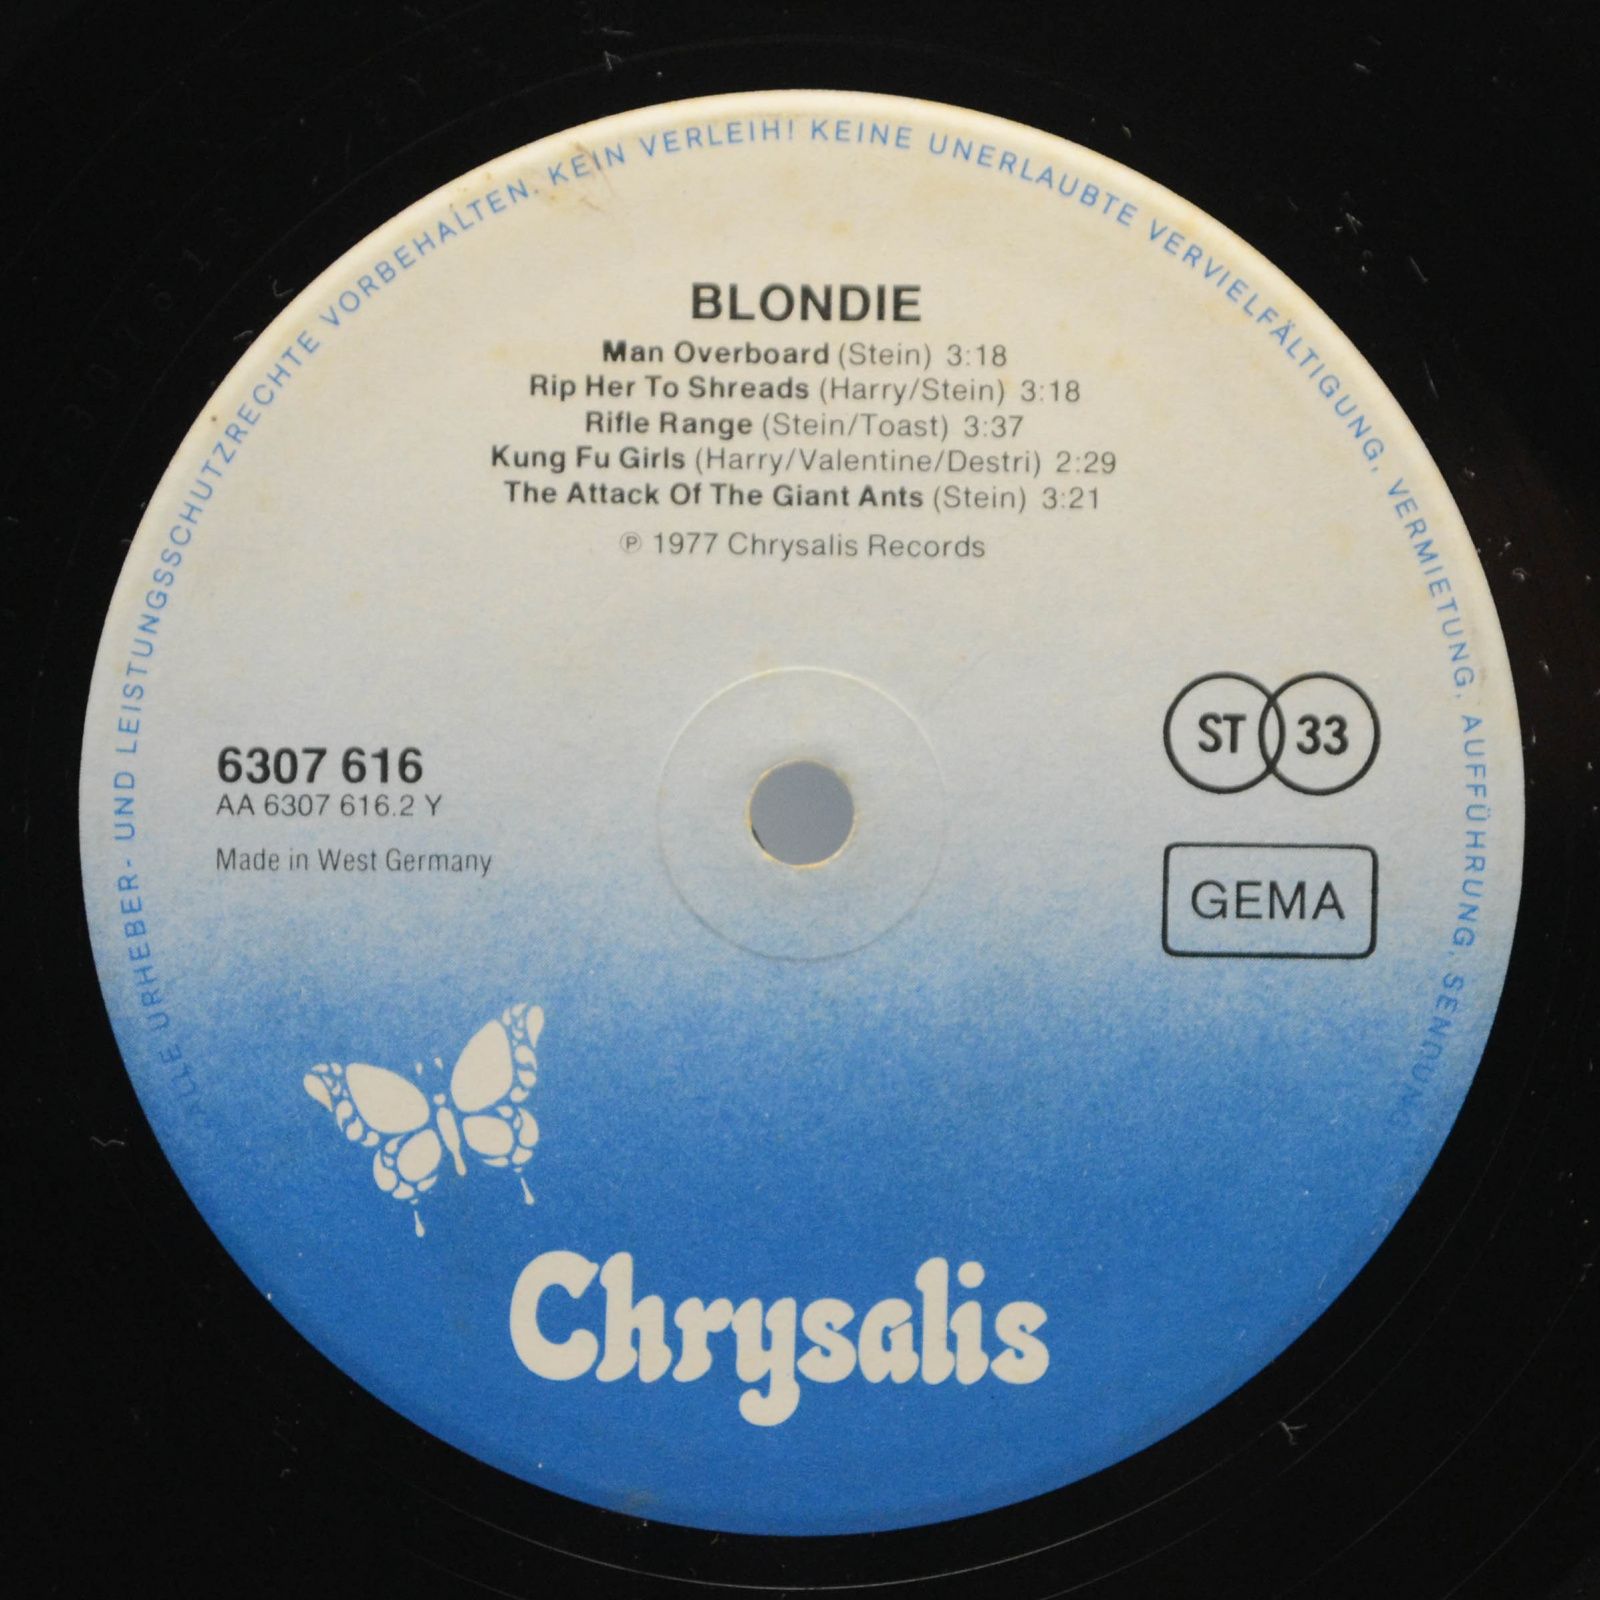 Blondie — Blondie, 1977